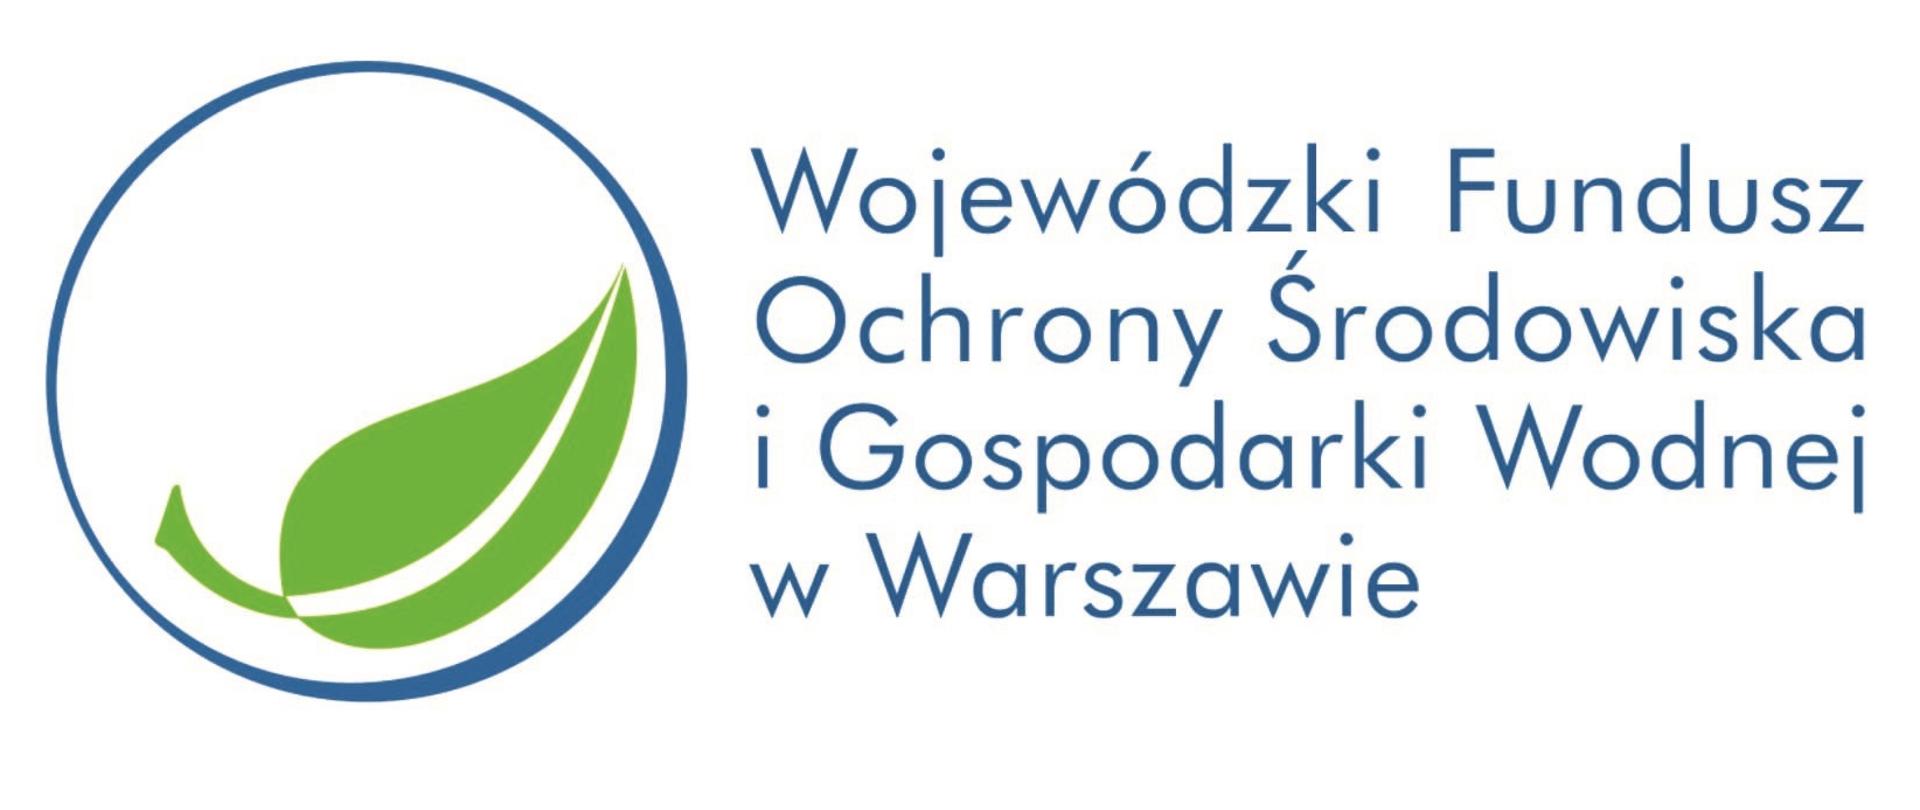 Logo Wojewódzkiego Funduszu Ochrony Środowiska i Gospodarki Wodnej w Warszawie